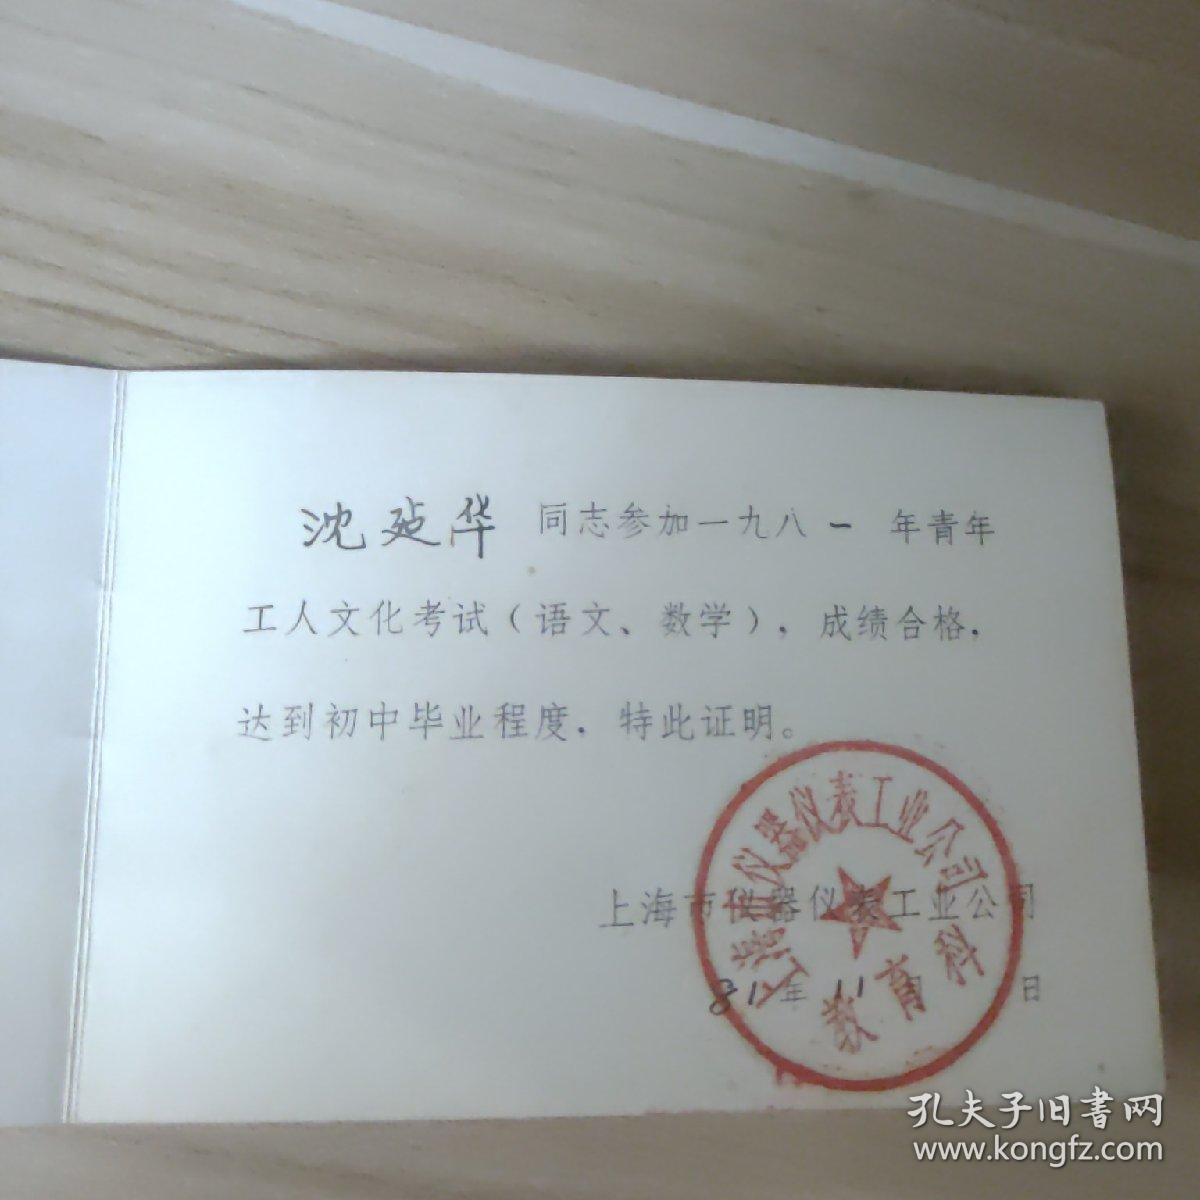 老证件——1981年文化考试合格证(上海市仪器仪表工业公司)